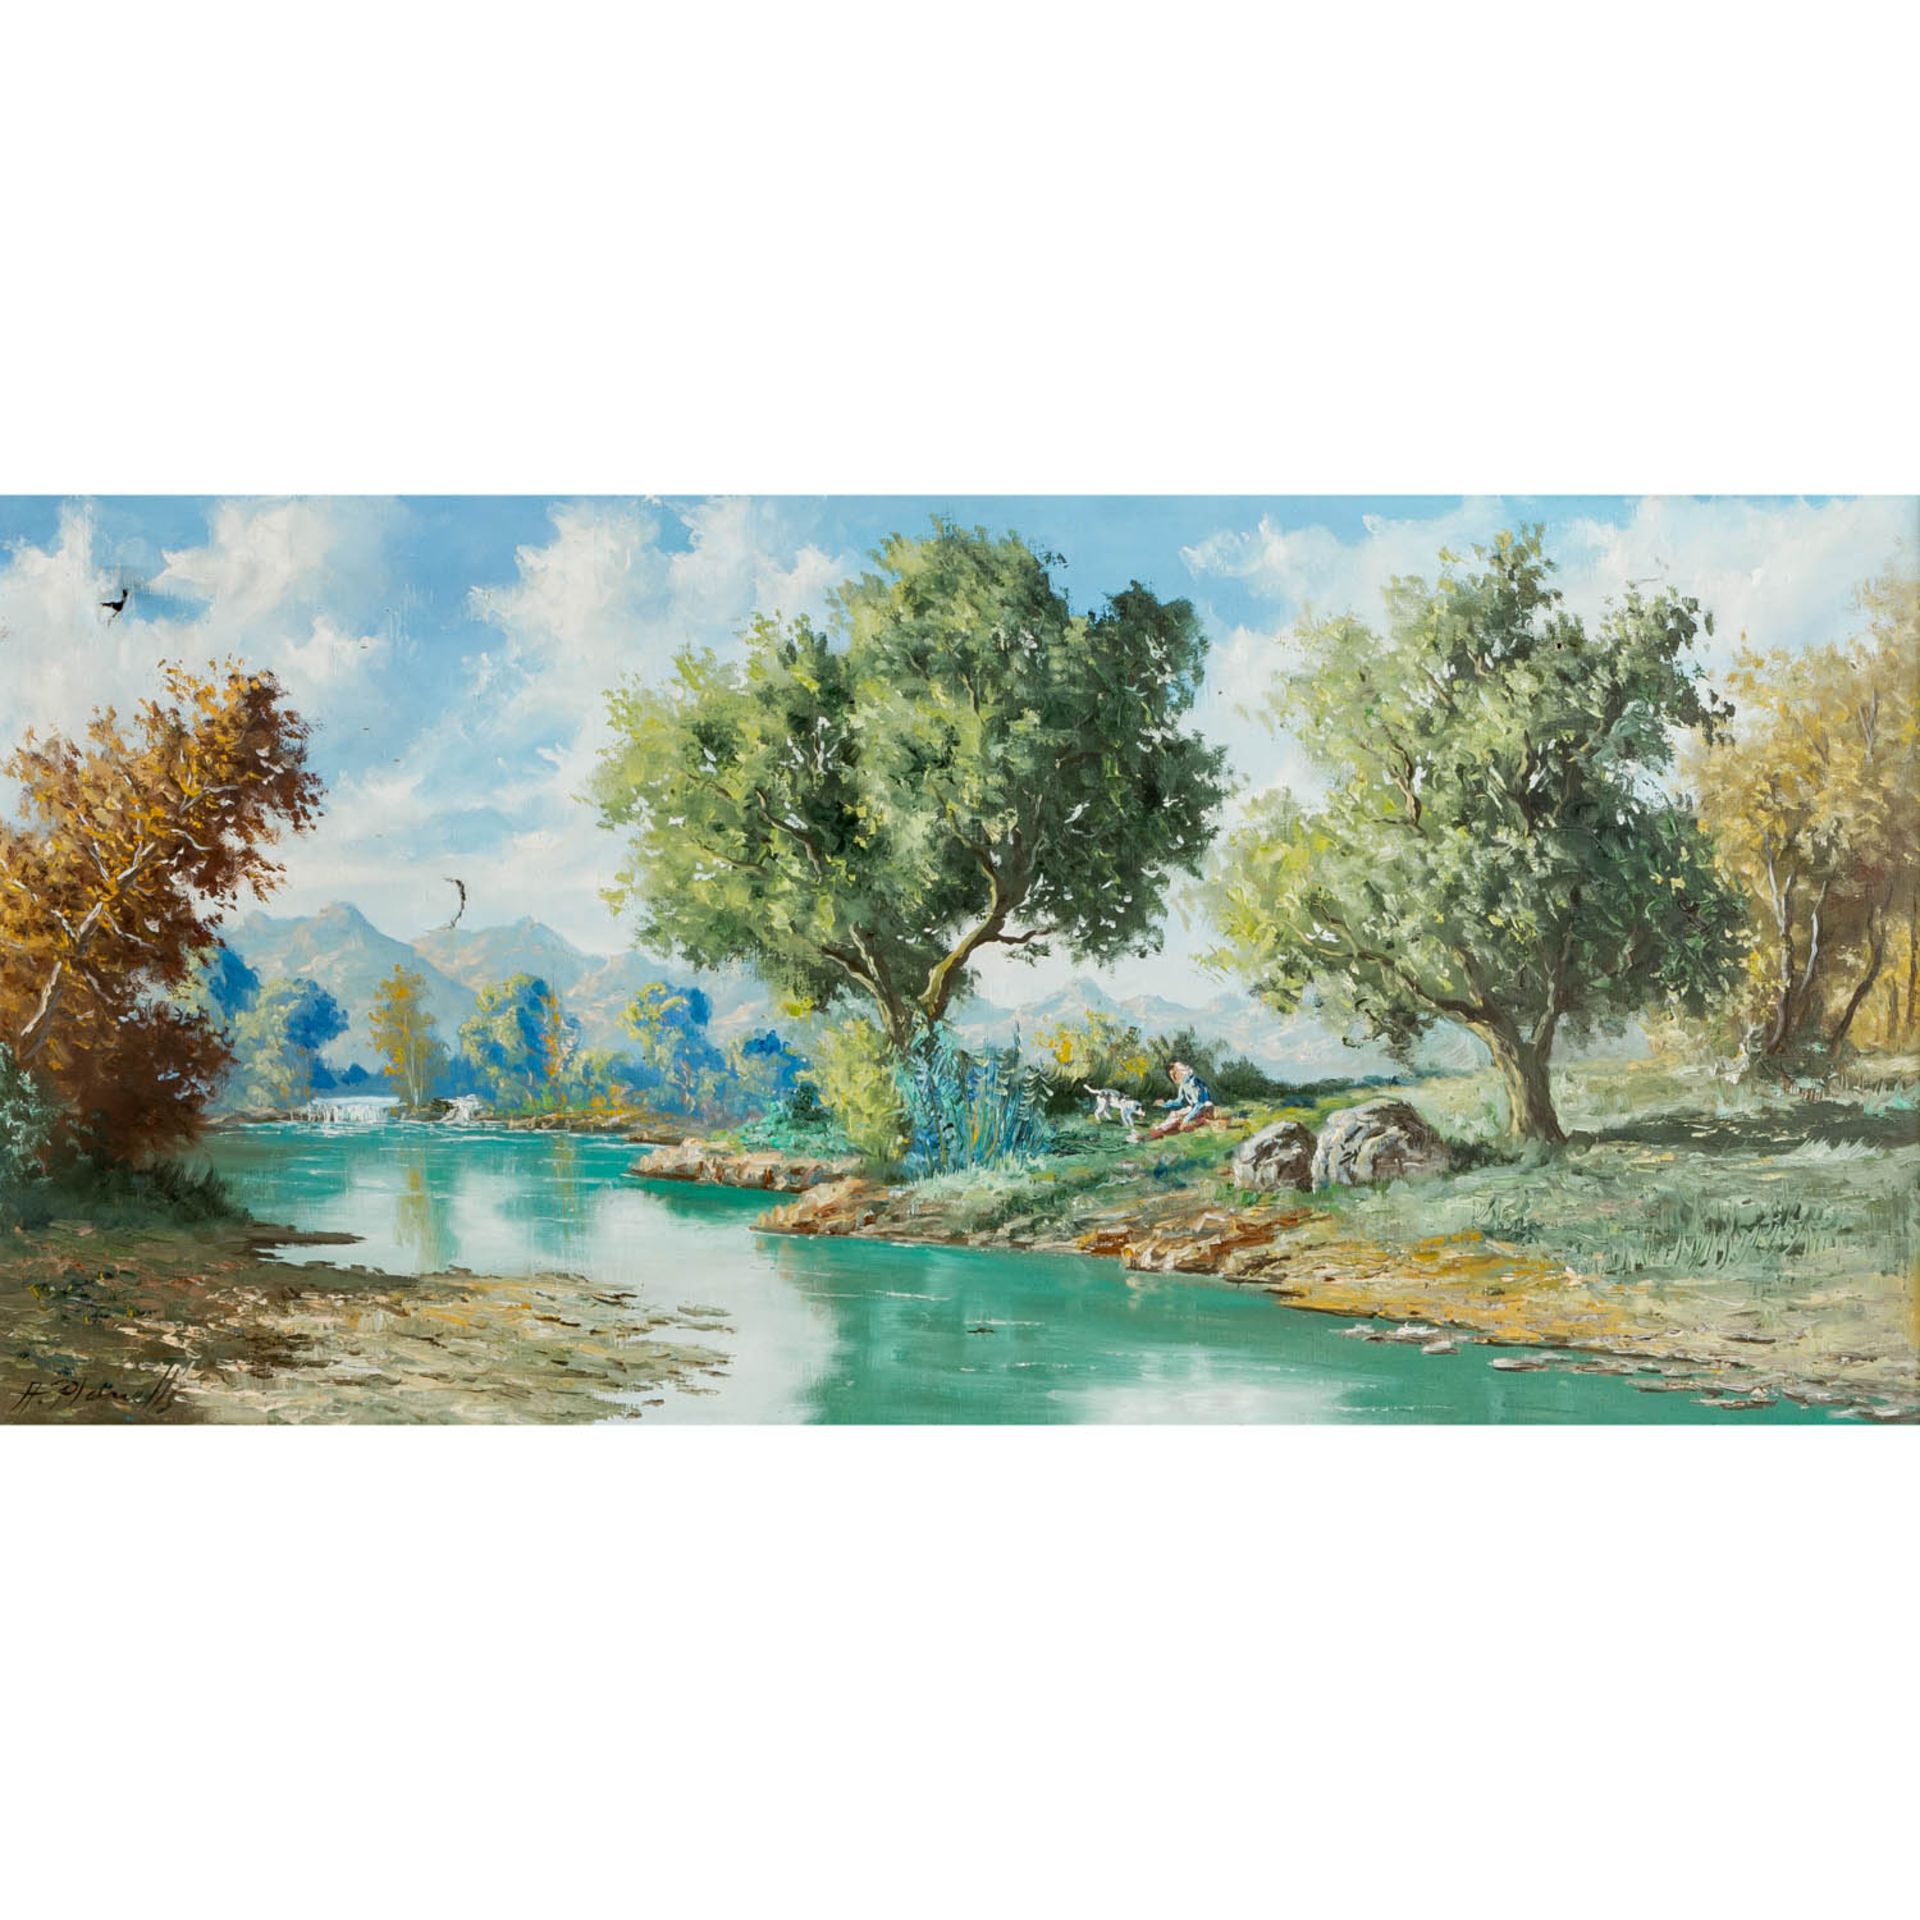 PLANELLS, A. (Maler 20. Jh.), "Paisage",Junge Frau mit Hund an einem Flussufer, im Hin